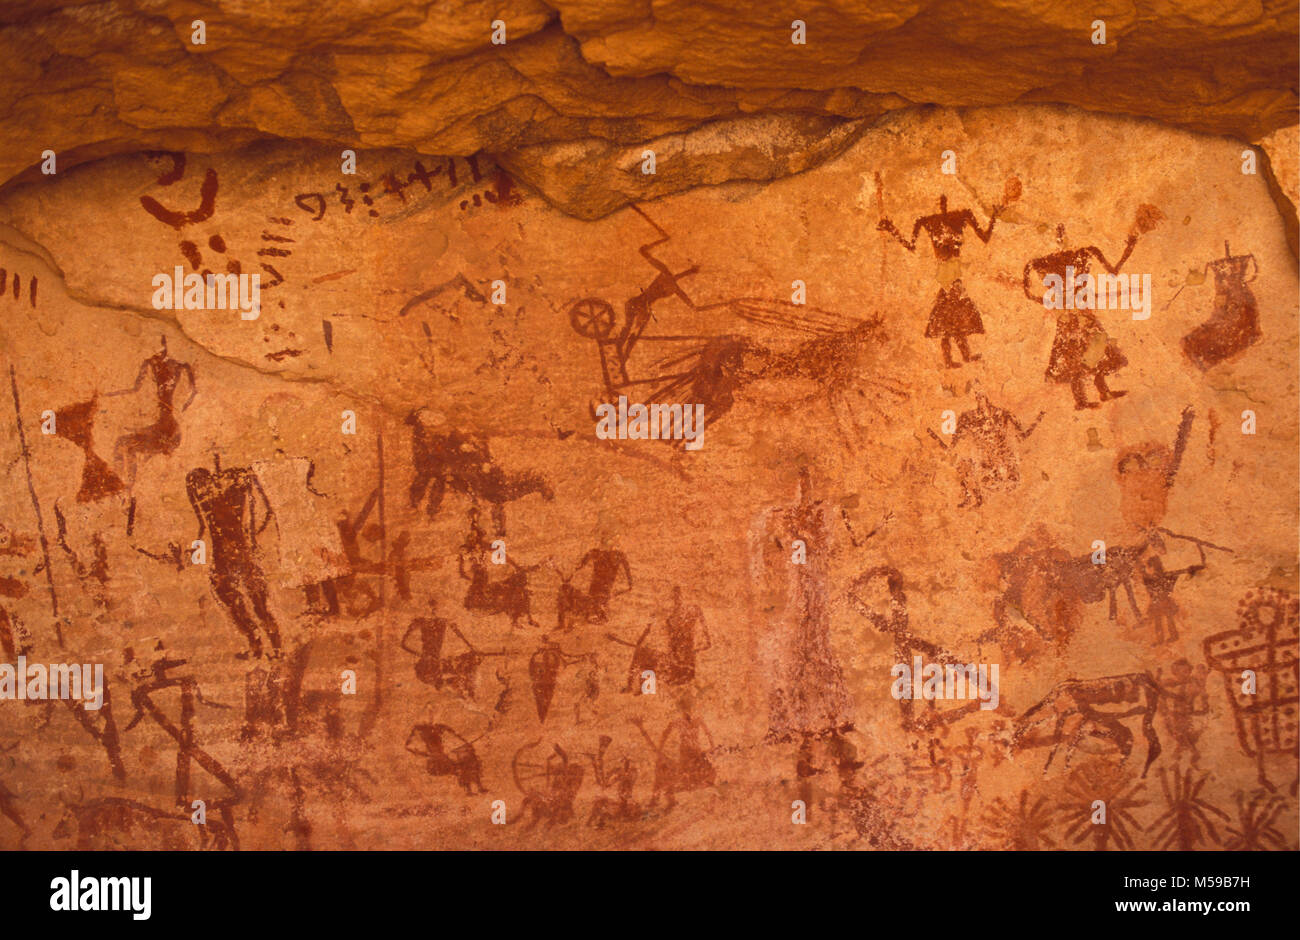 Libyen. In der Nähe von Ghat. Sahara. Akakus Nationalparks. Prähistorische Felsmalereien Gemälde. Tadrart Acacus rock-art Stätten. Unesco-Weltkulturerbe. Stockfoto